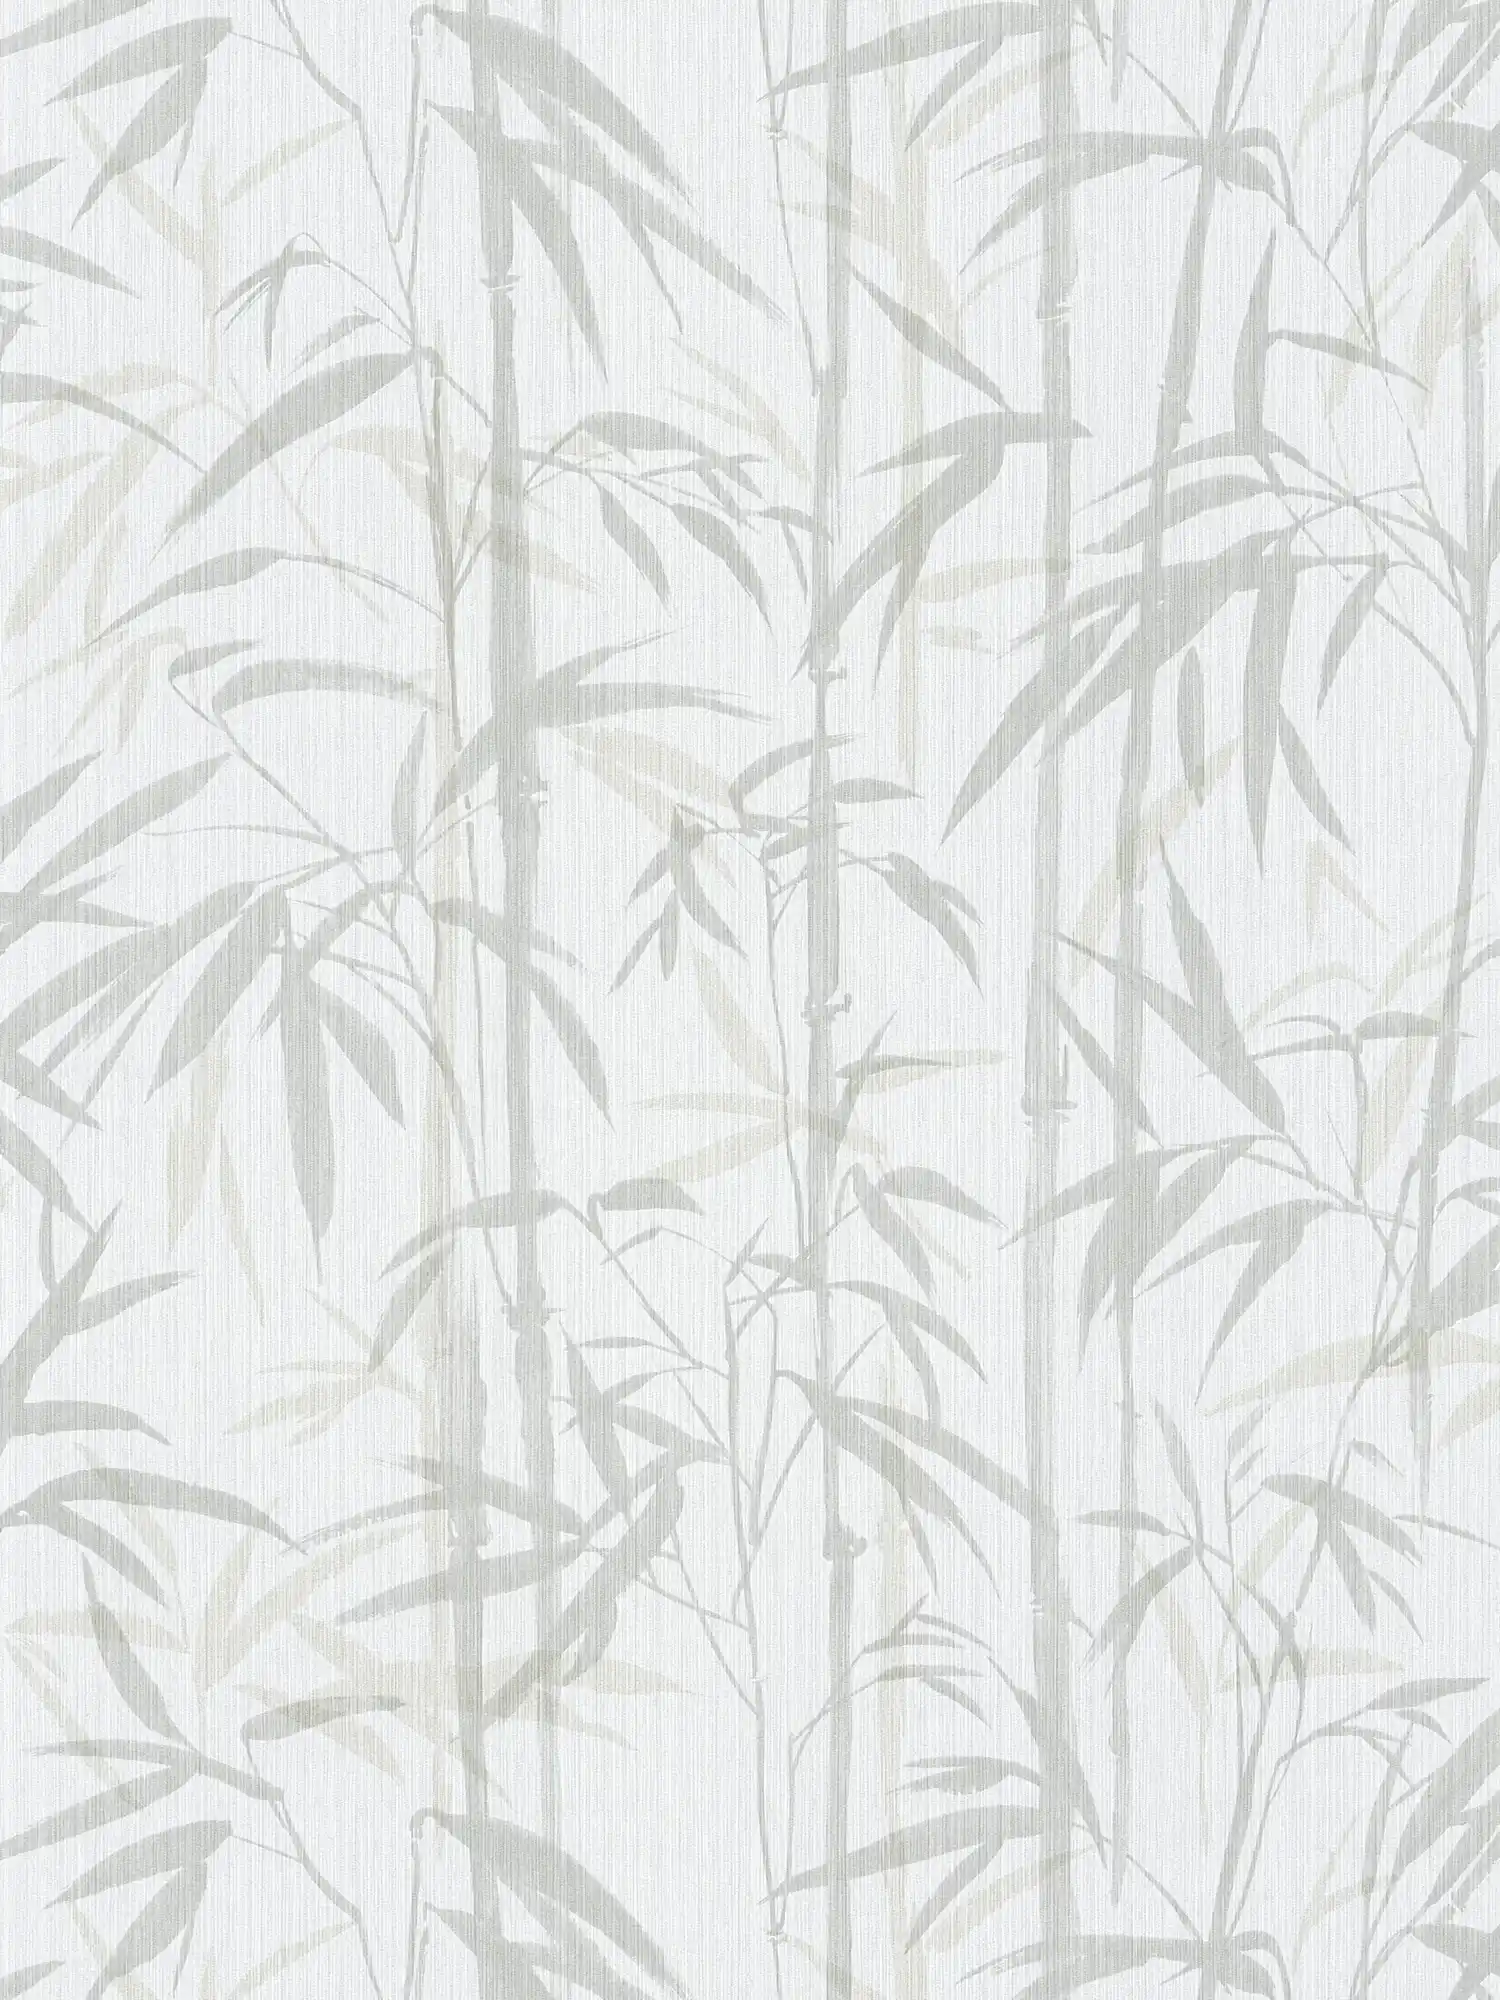         MICHALSKY Vliestapete natürliches Bambus Muster – Beige, Creme
    